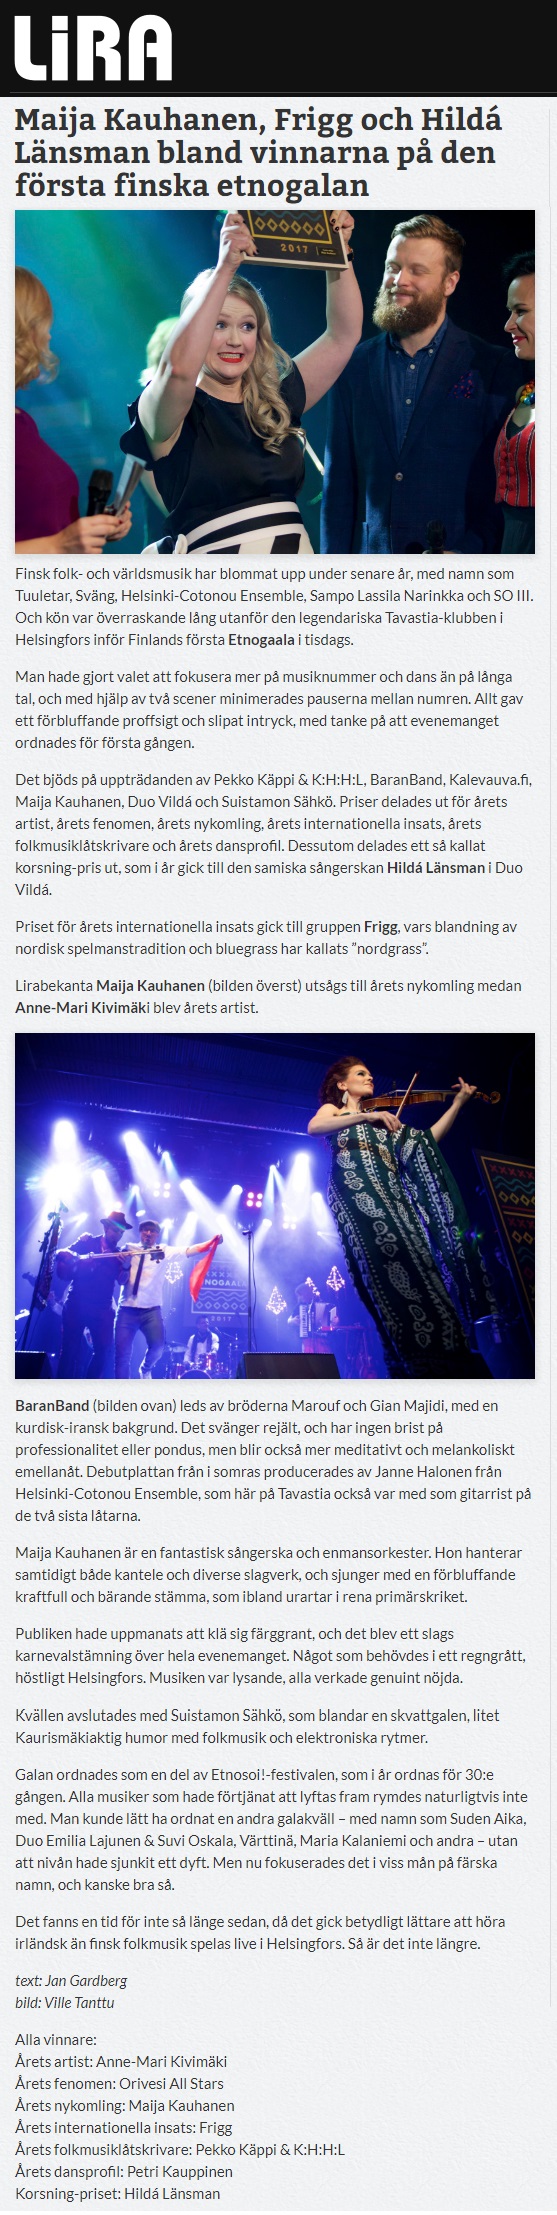 Lira Musikmagasin (Sweden), 10.11.2017